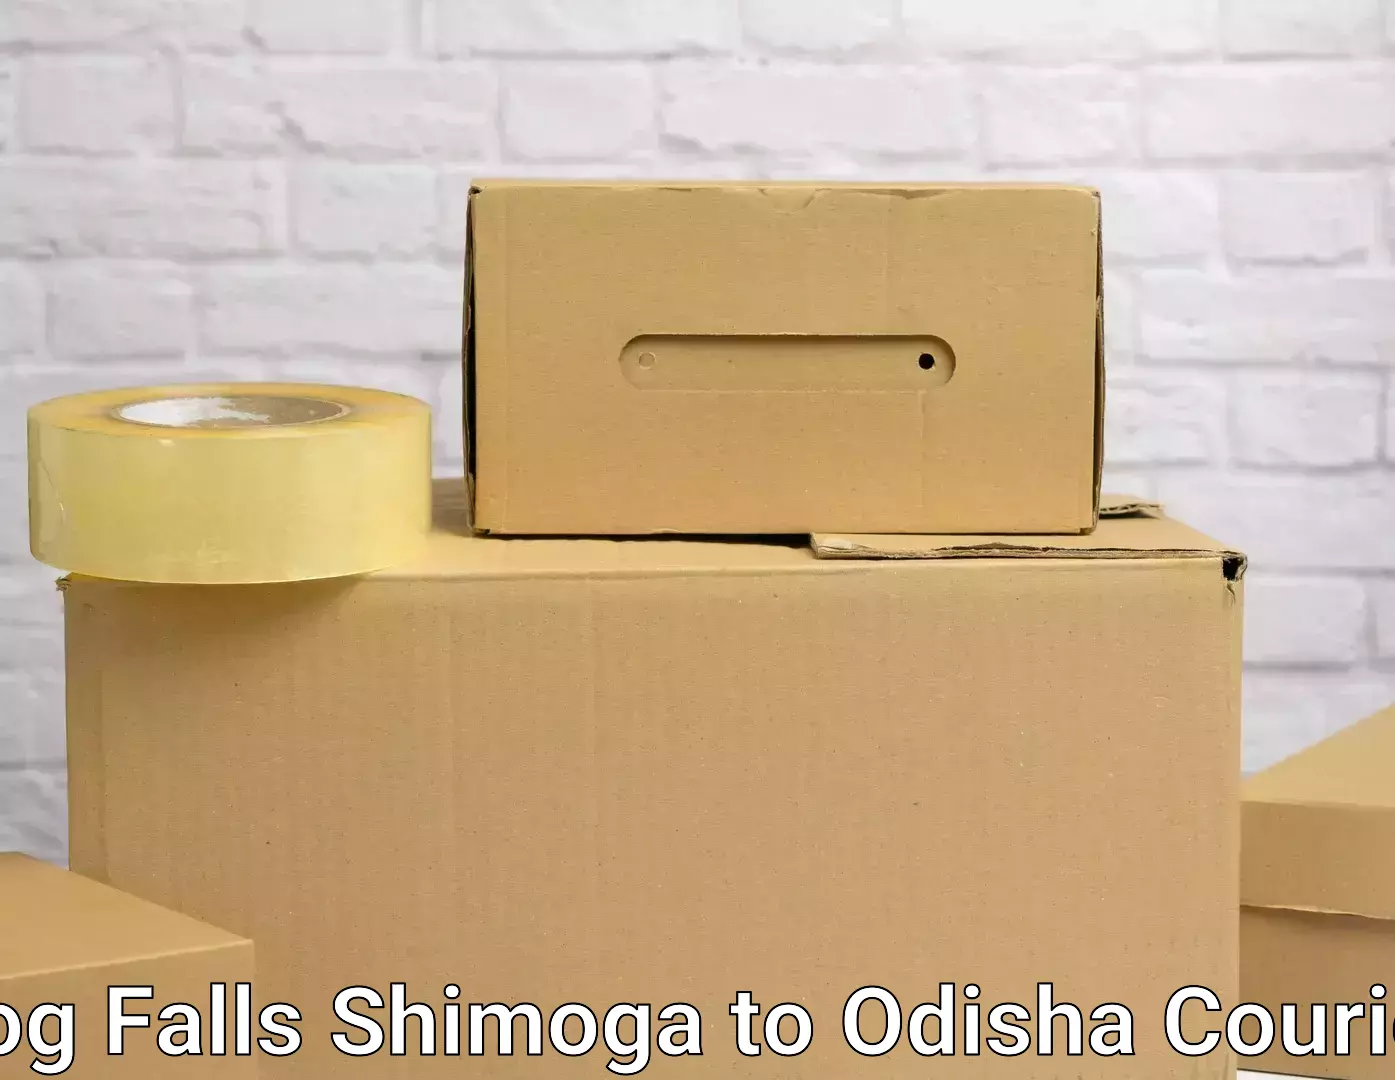 Affordable moving services Jog Falls Shimoga to Kosagumuda